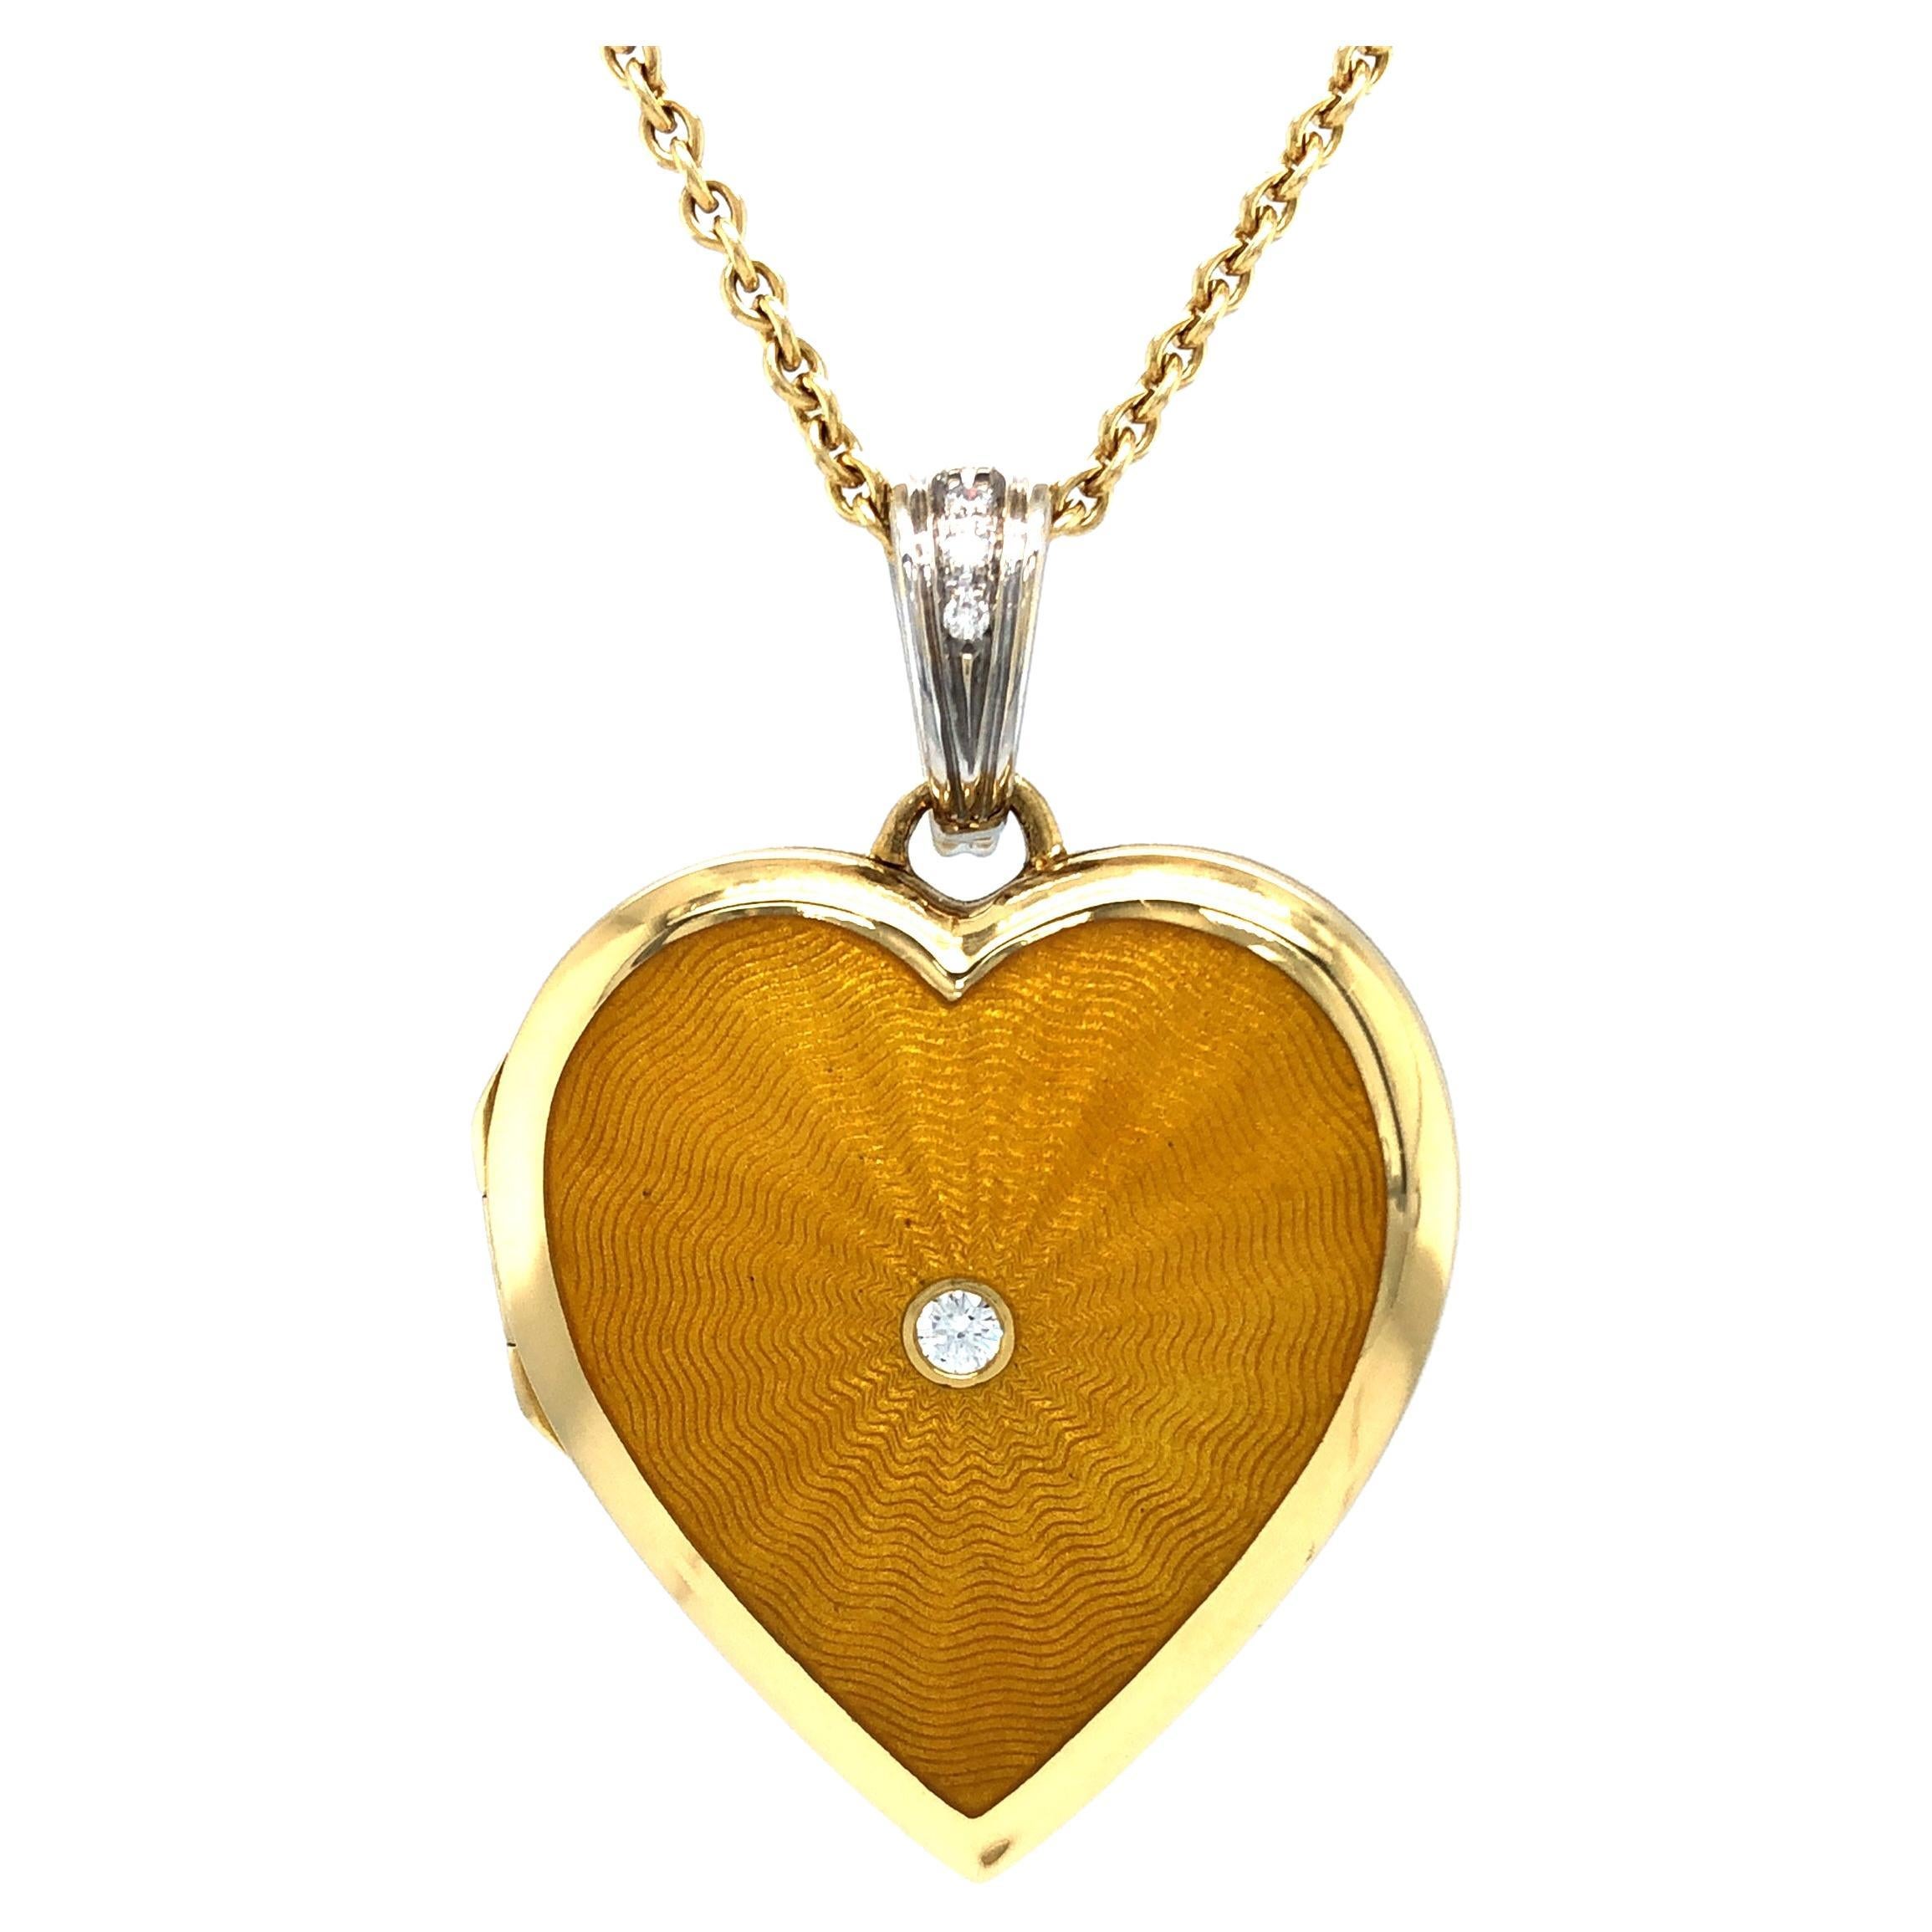 Collier pendentif cœur en or jaune 18 carats, or blanc émaillé, 4 diamants 0,8 carat